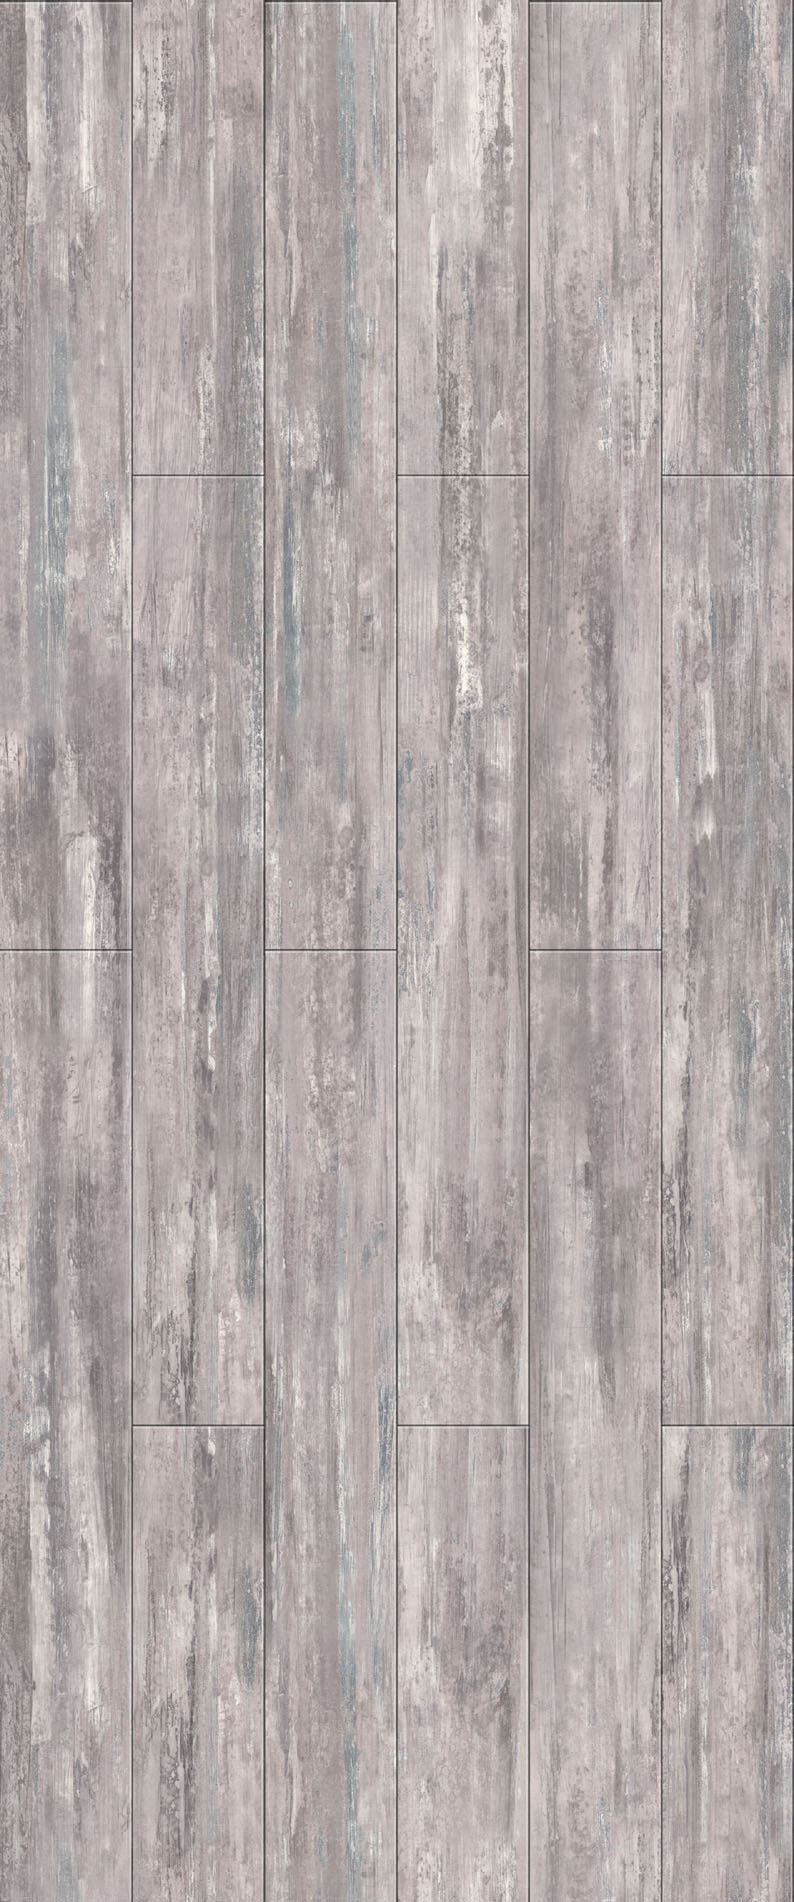 木地板 贴图 地板 设计素材 木材贴图 木地板贴图 木地板效果图 装修效果图 木地板材质 装饰素材 室内装饰用图